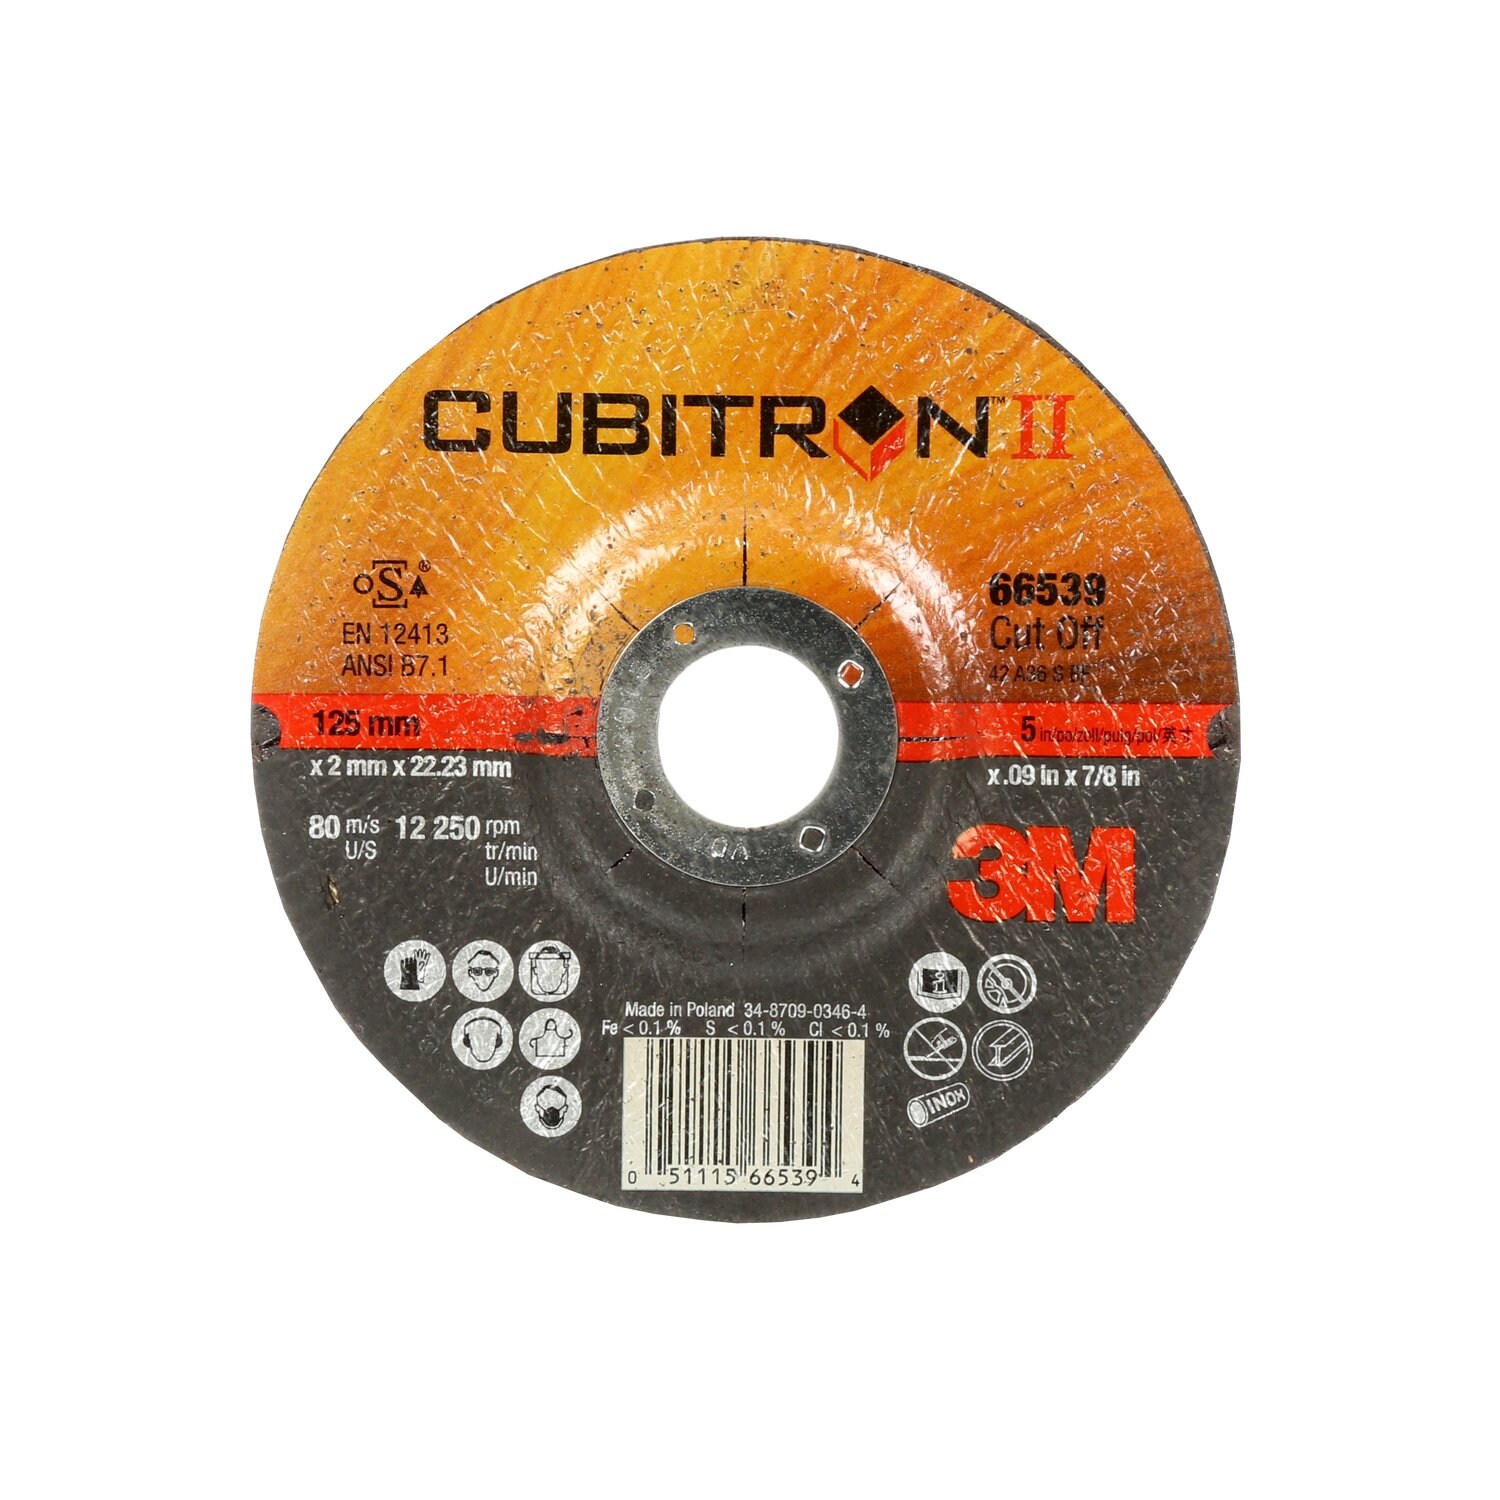 7100228957 - 3M Cubitron II Cut-Off Wheel, 66539, 36, T42, 125 mm x 2 mm x 22.23
mm, 25/Inner, 50 ea/Case